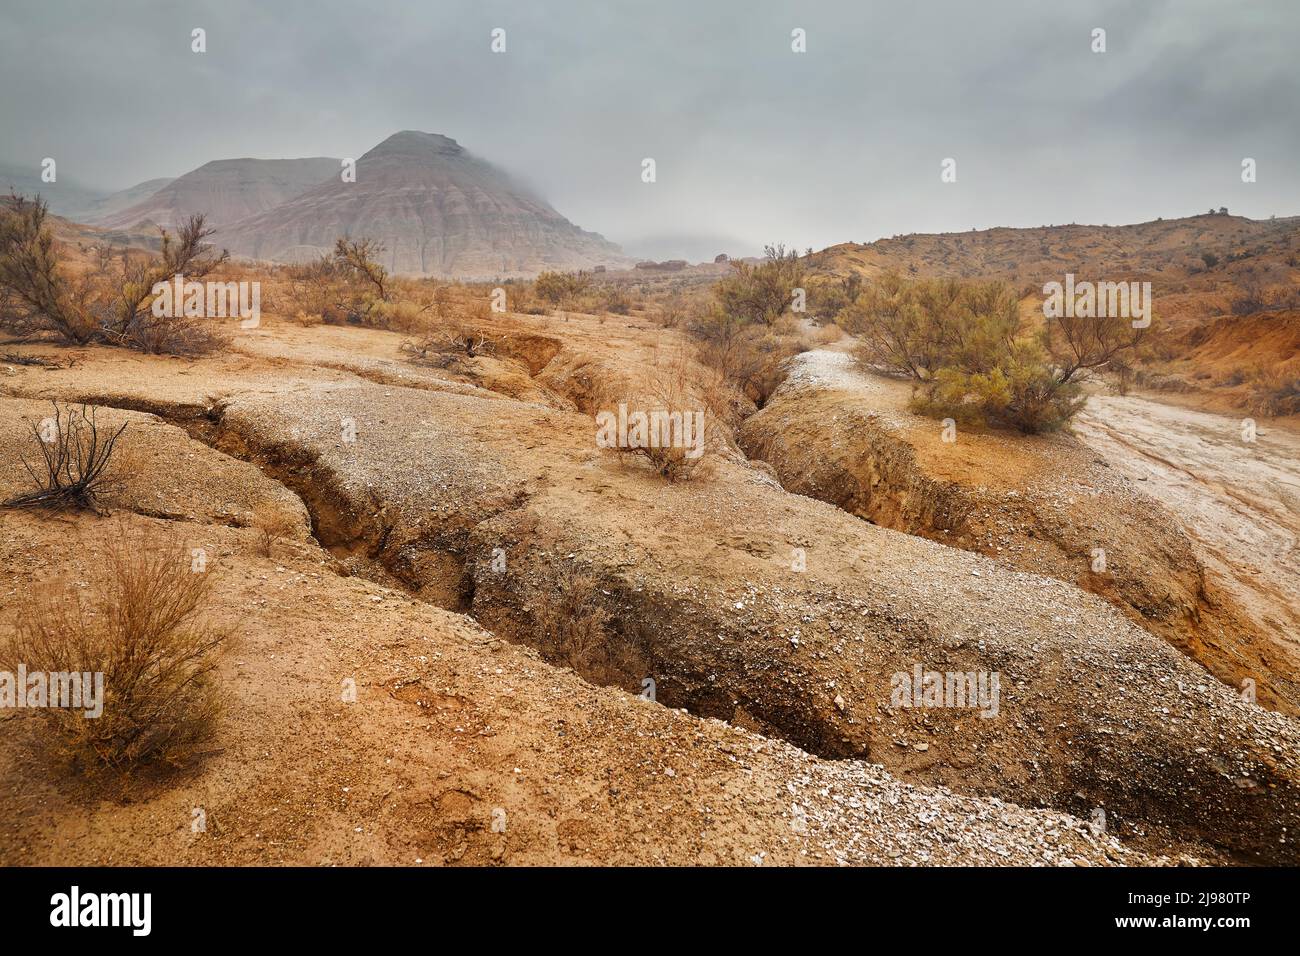 Paesaggio del Monte Rosso con striscia bizzarra montagne stratificate in canyon a nebbia cielo nuvoloso in bellissimo parco del deserto con pianta secca a foregroun Foto Stock